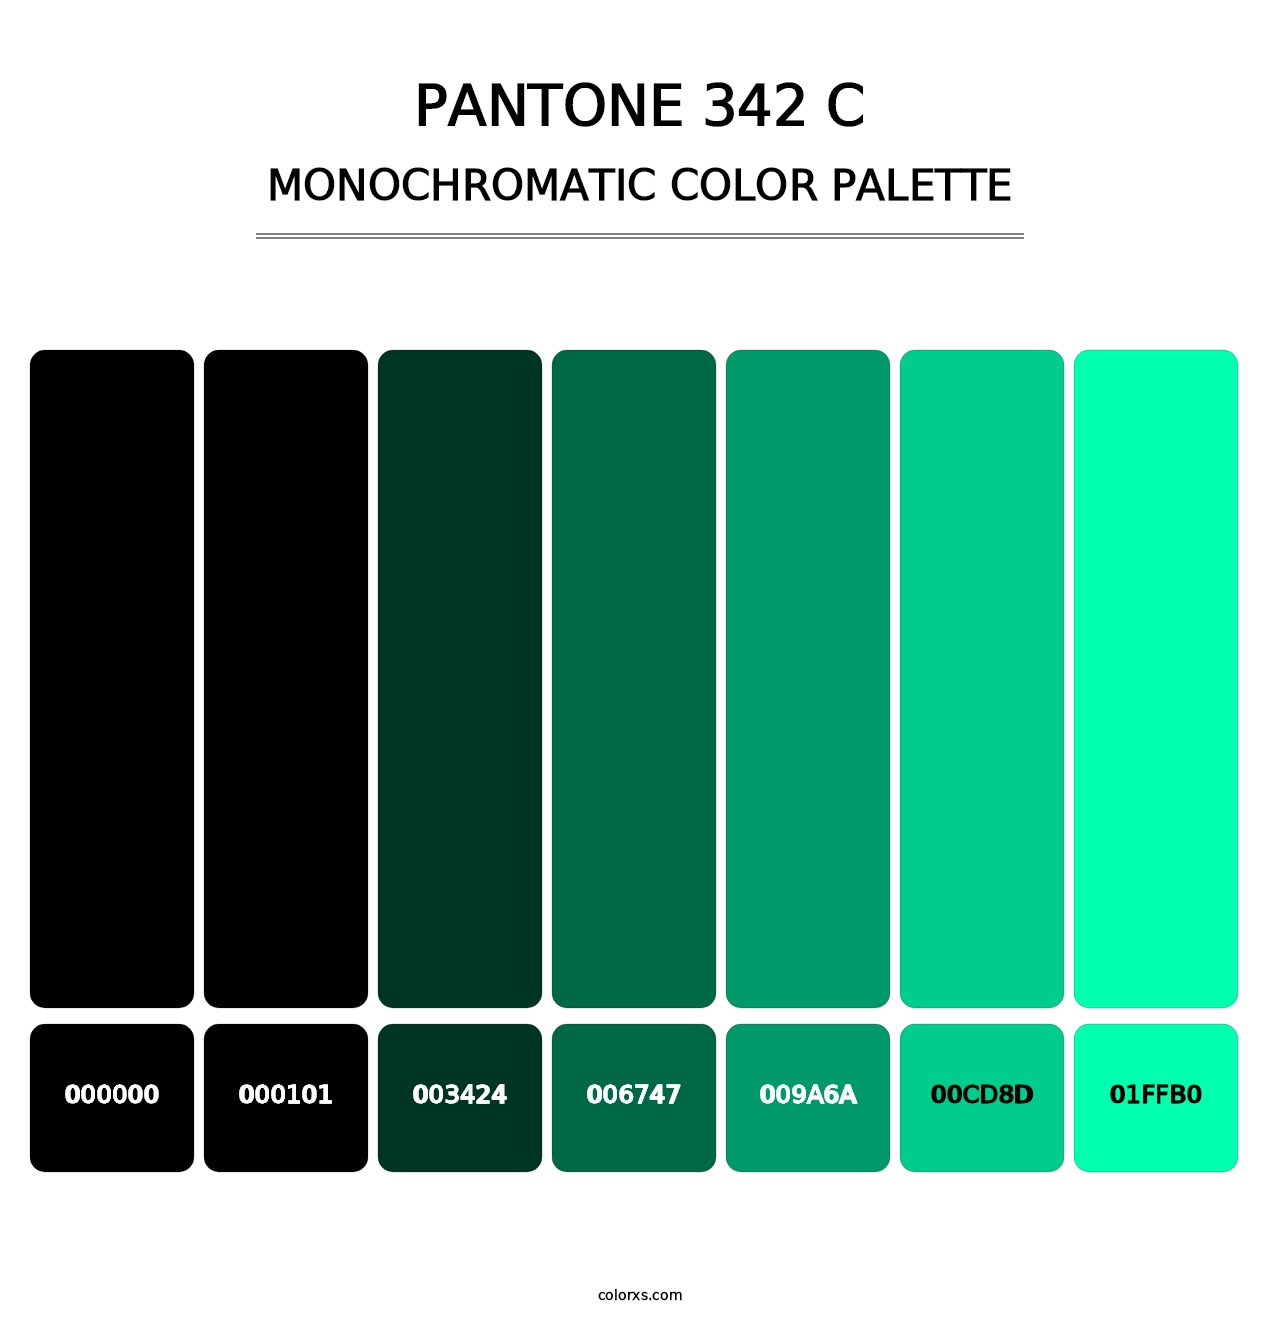 PANTONE 342 C - Monochromatic Color Palette